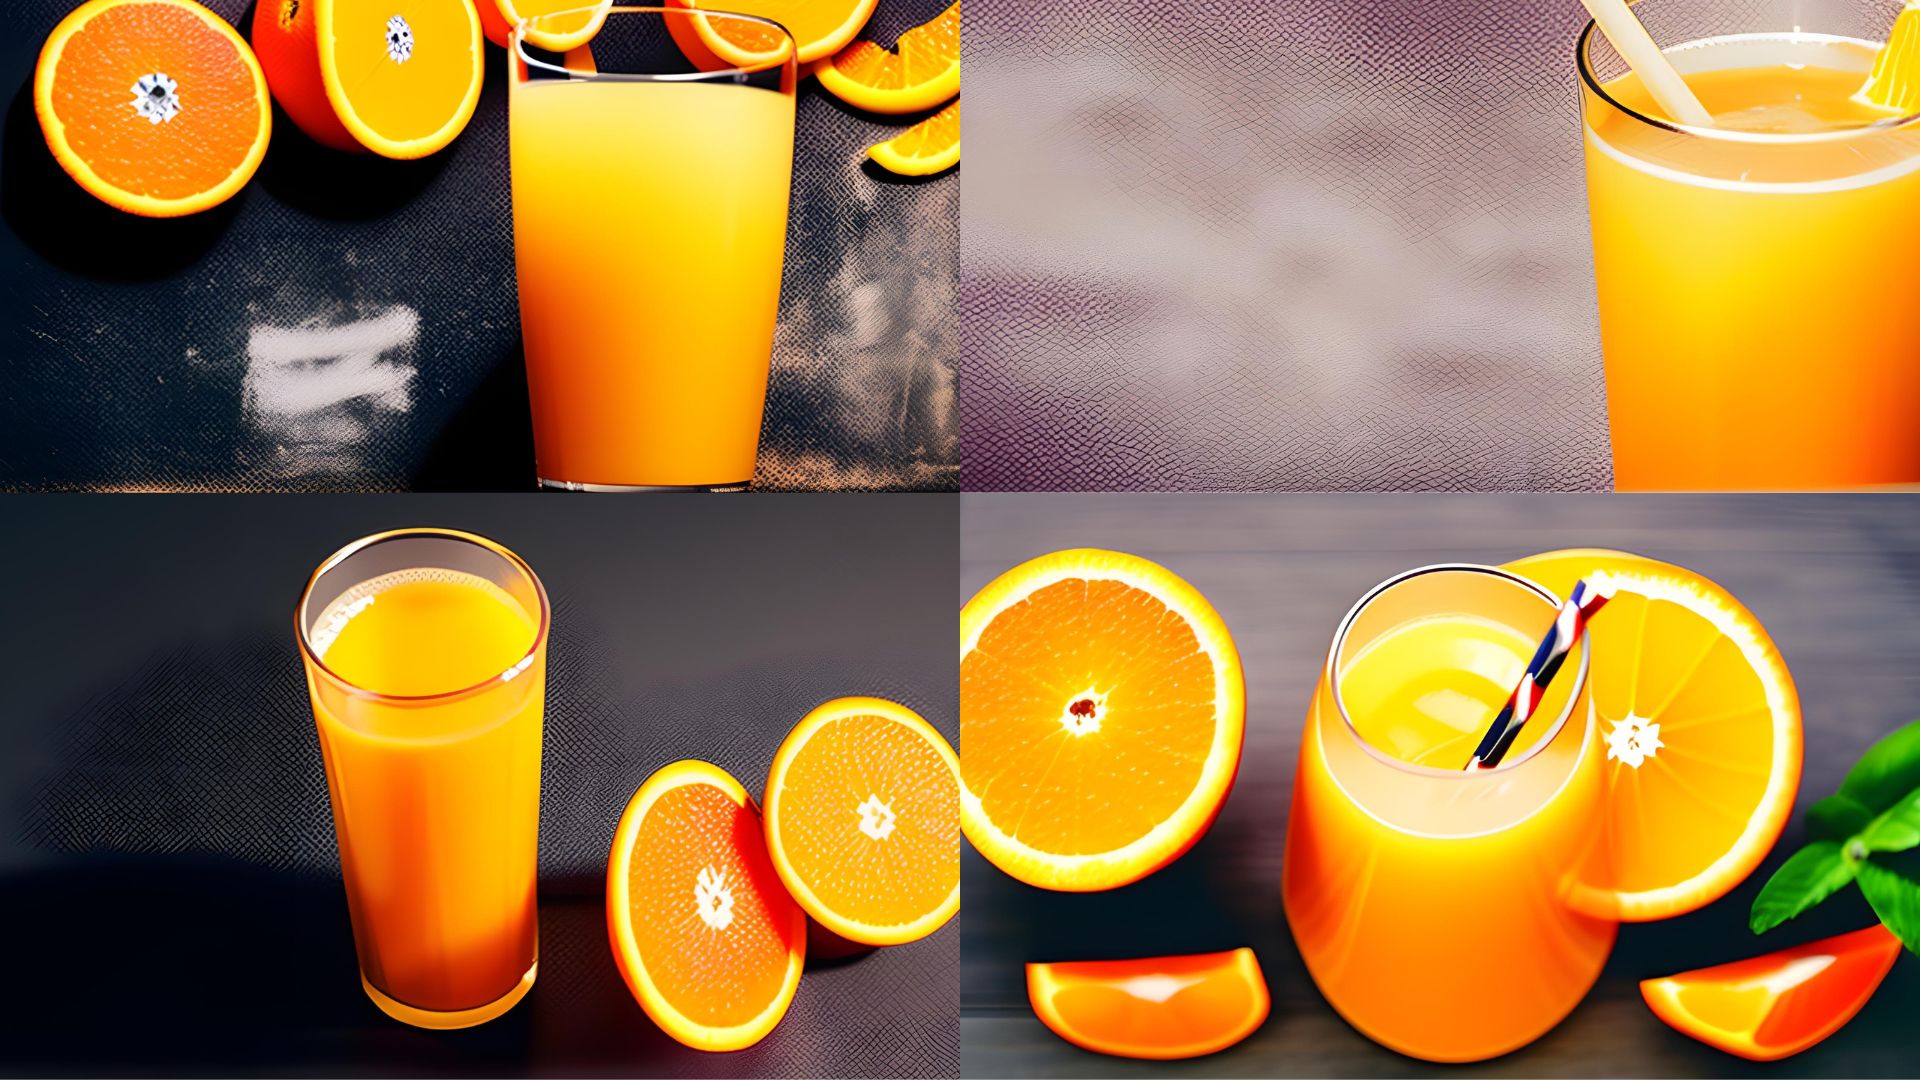 Can you Freeze Orange Juice